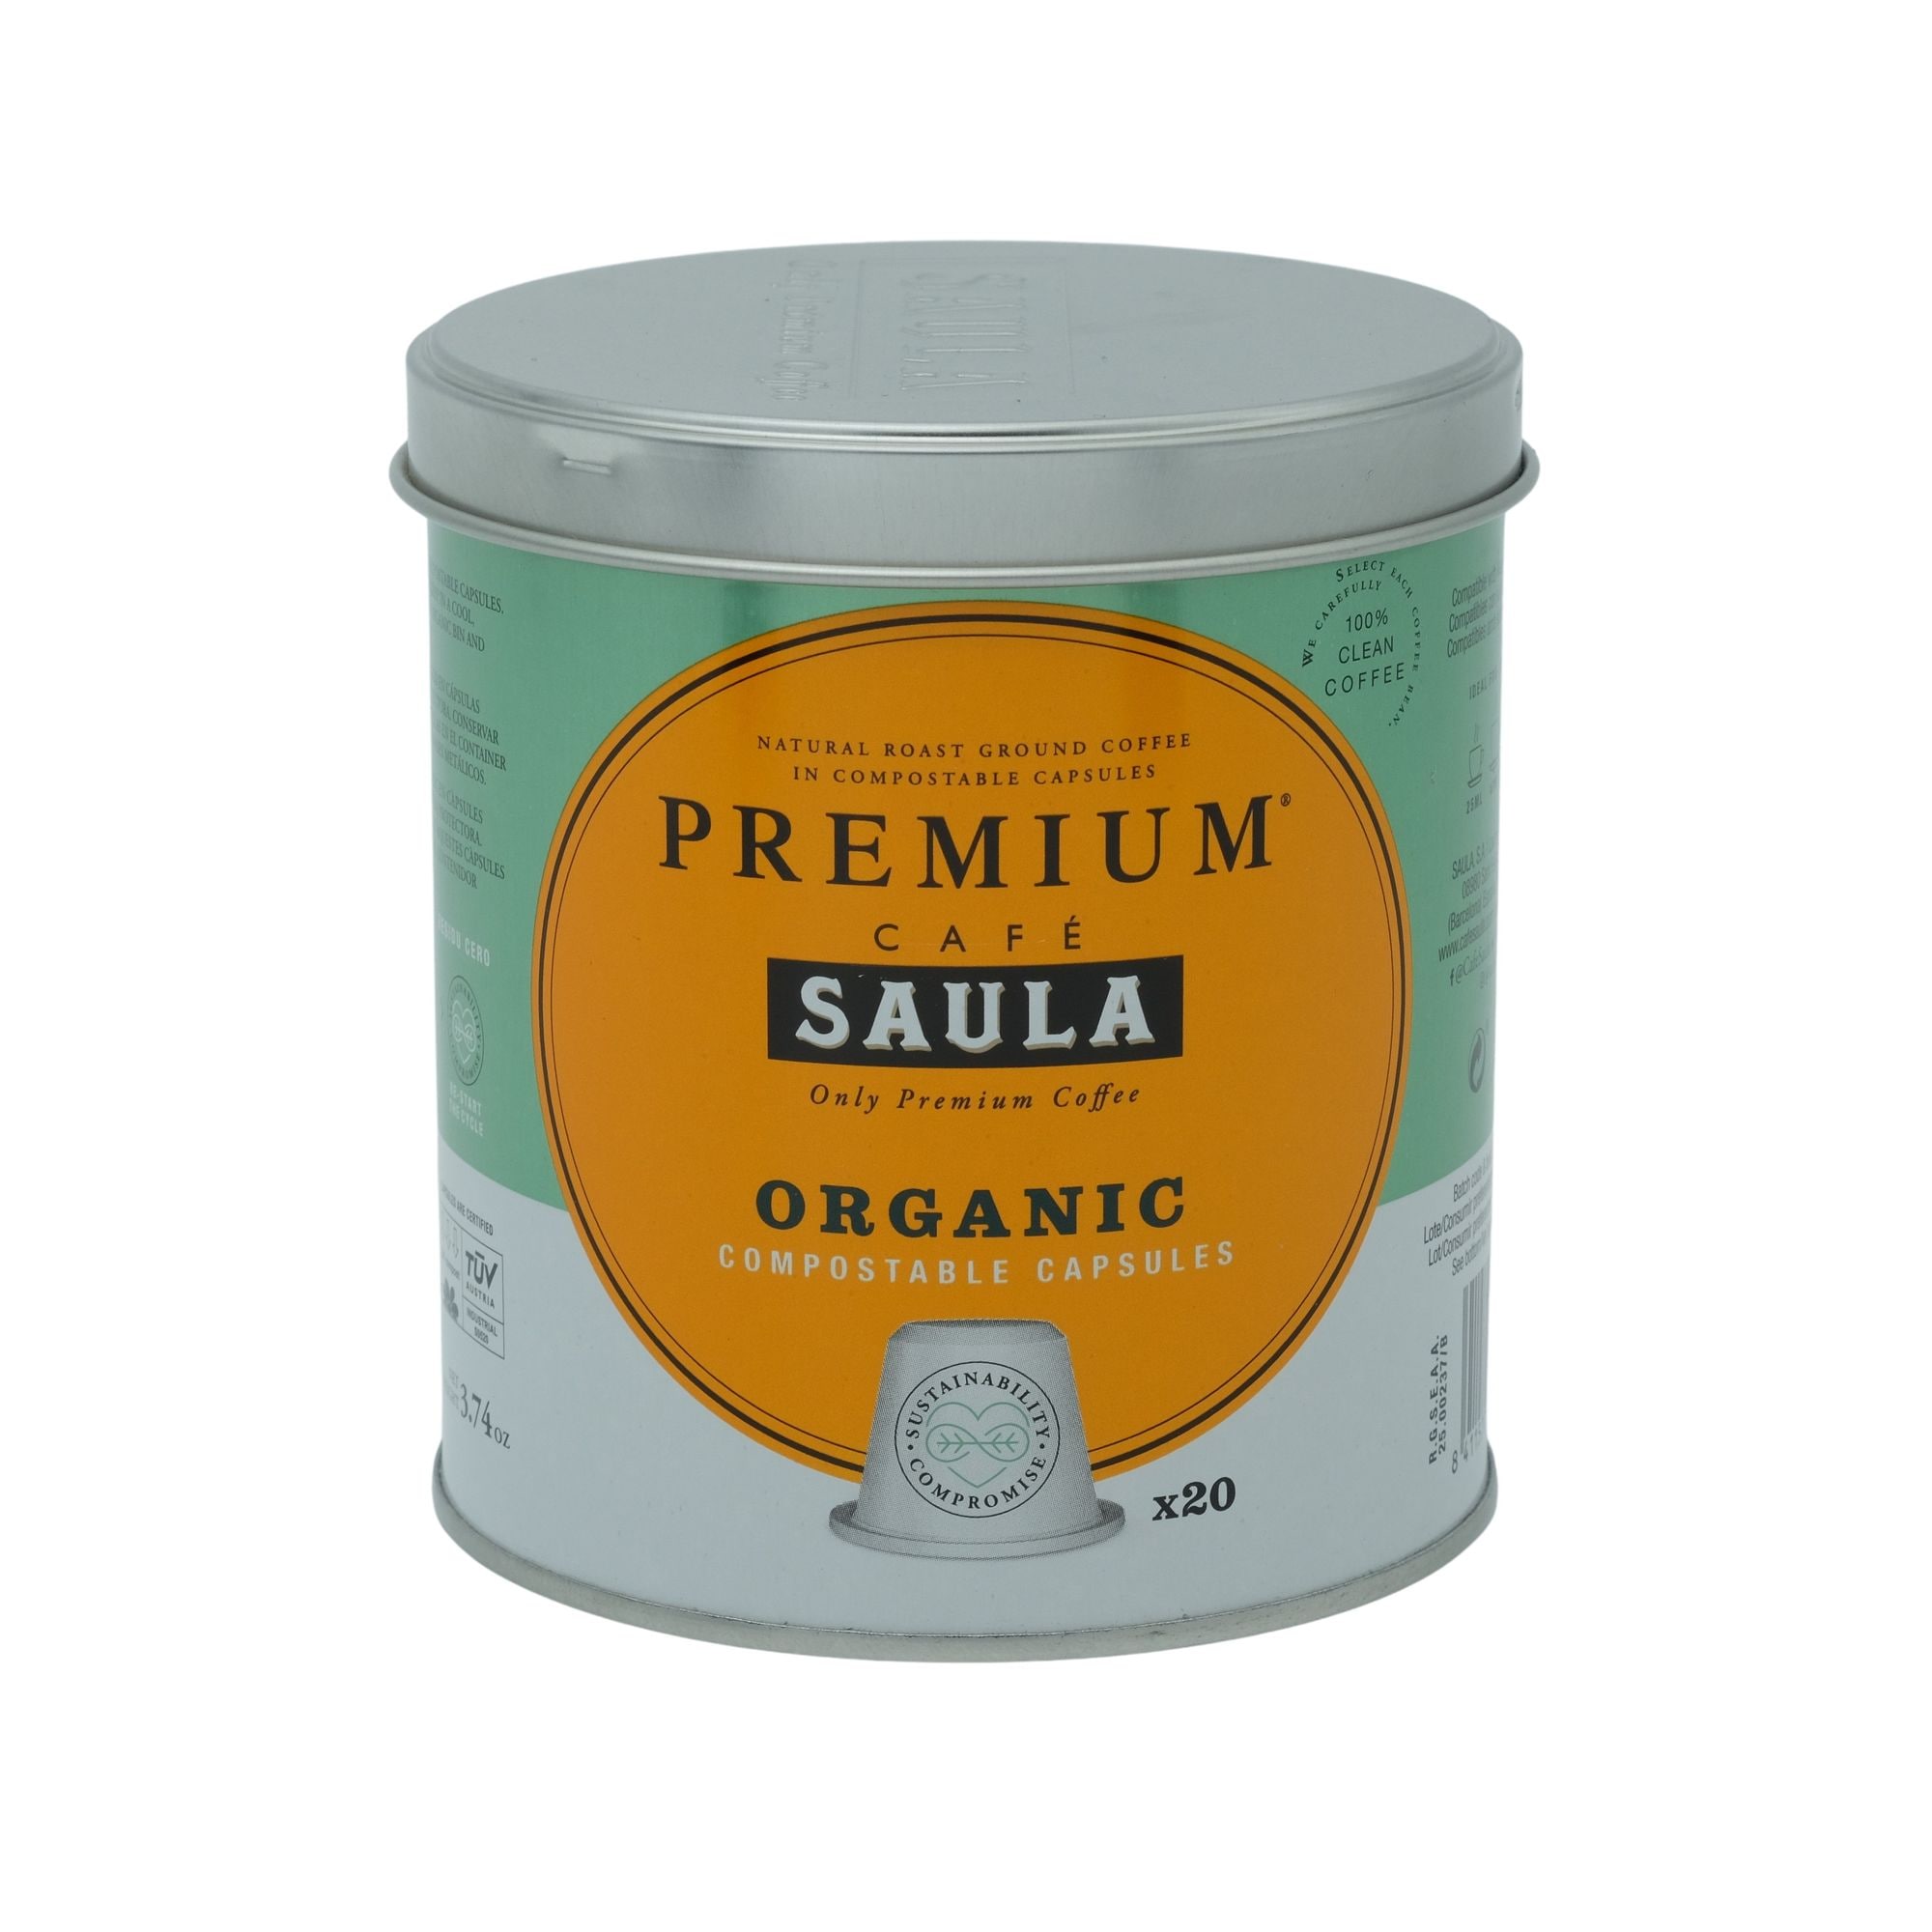  Premium® Saula Café: ORIGINAL